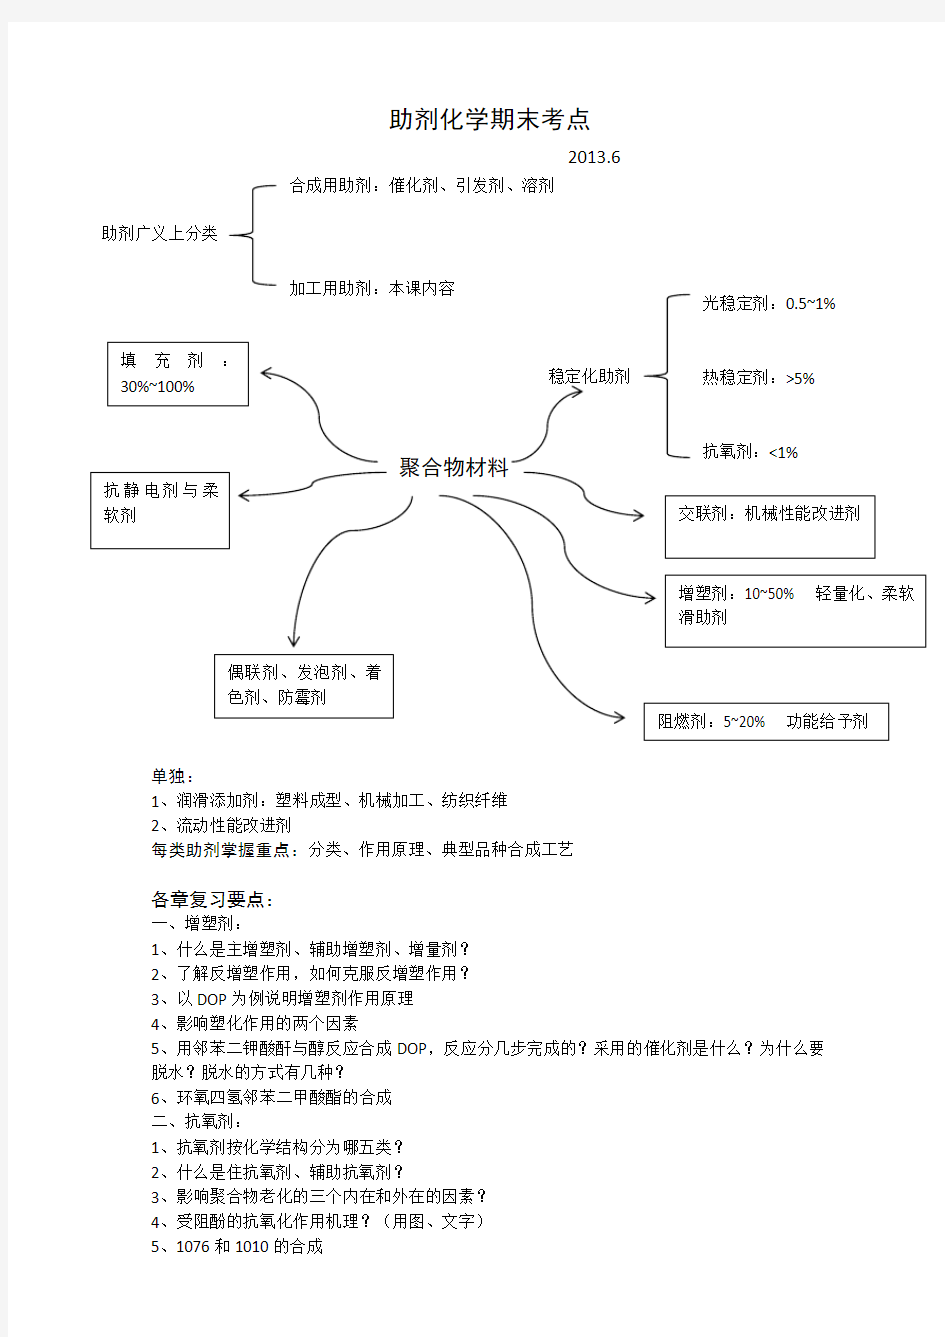 天津大学助剂化学考点完整版(201306)